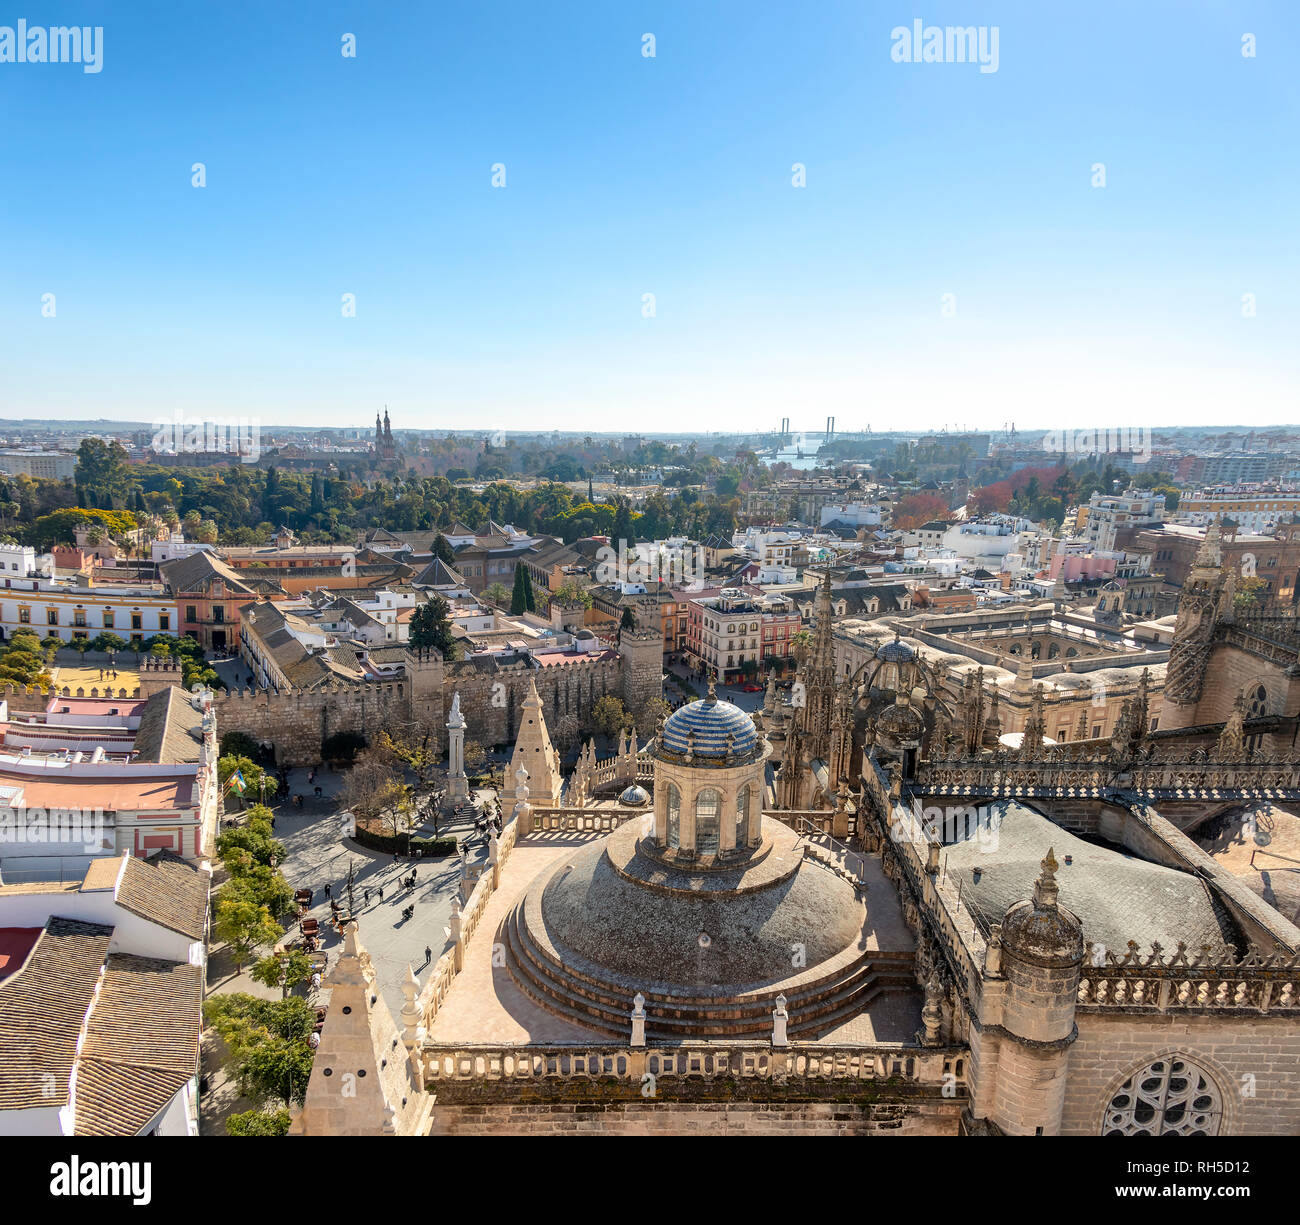 Vista aerea della città di Siviglia e la Cattedrale di Santa Maria del vedere a Siviglia come si vede dalla vista dalla torre Giralda. Con Royal¡AlcÃ zar di Siviglia Foto Stock